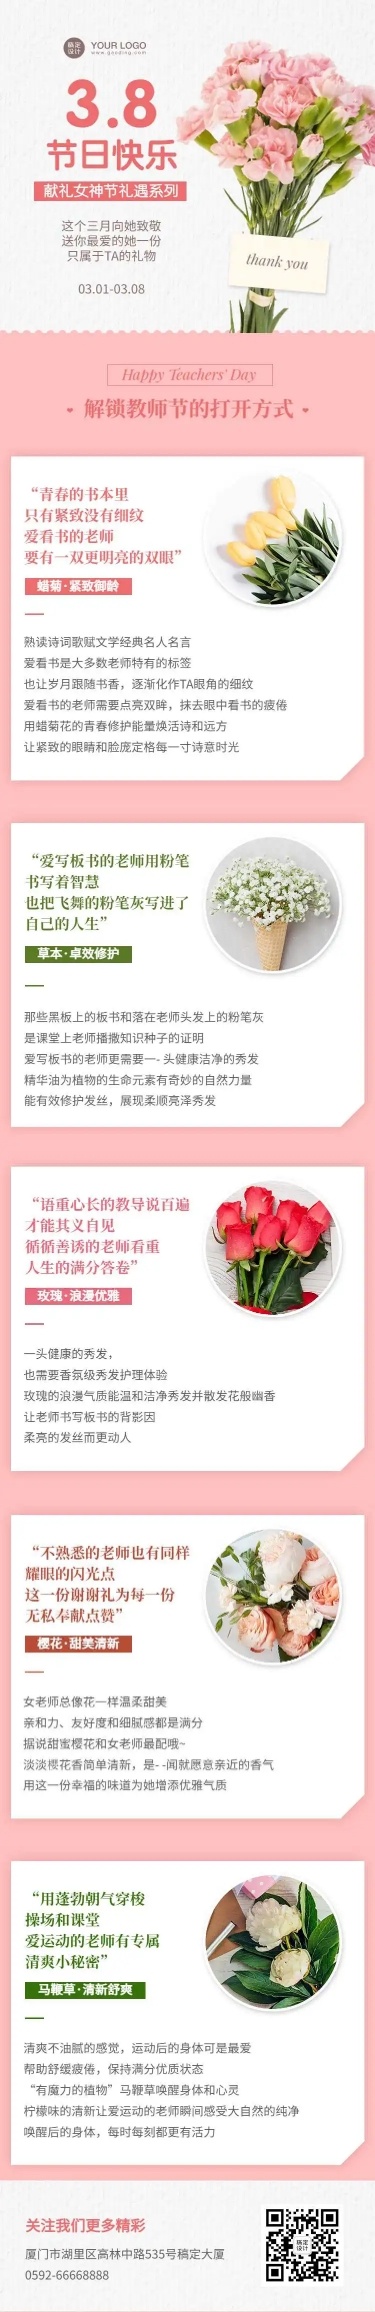 H5长页妇女节营销产品推广花店感恩节